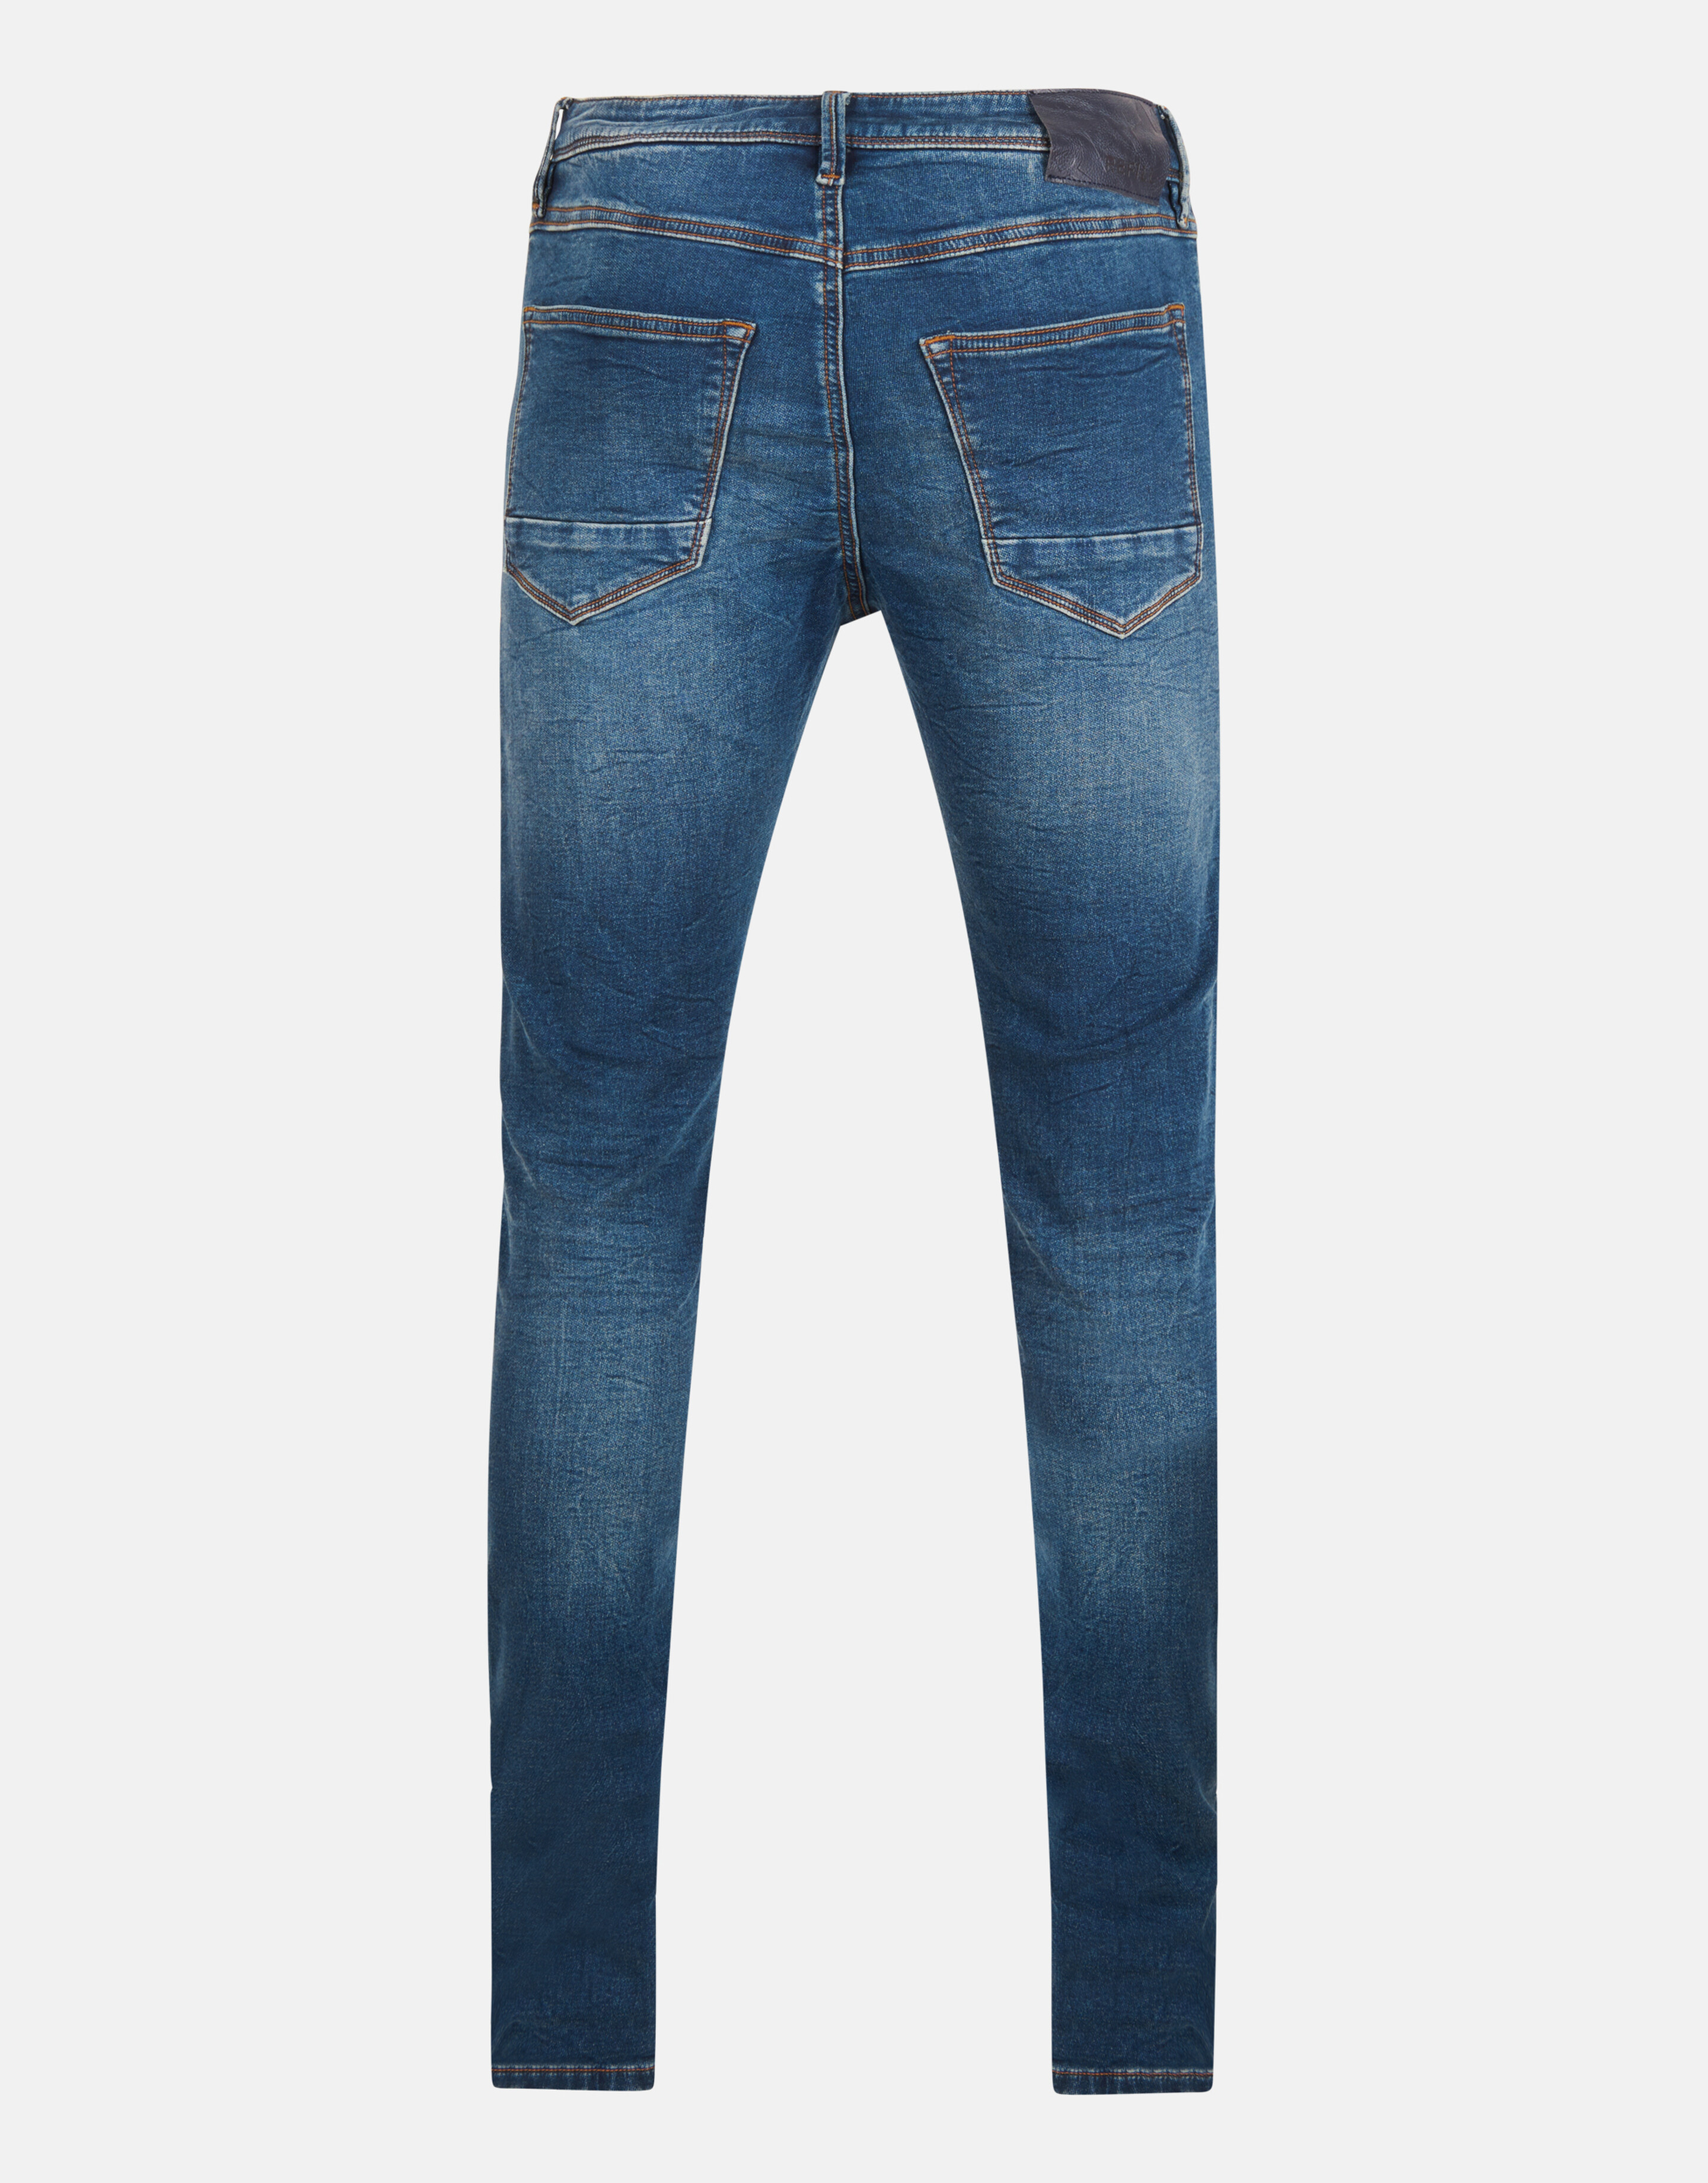 Slim Fit Jog Jeans Donkerblauw L34 Refill